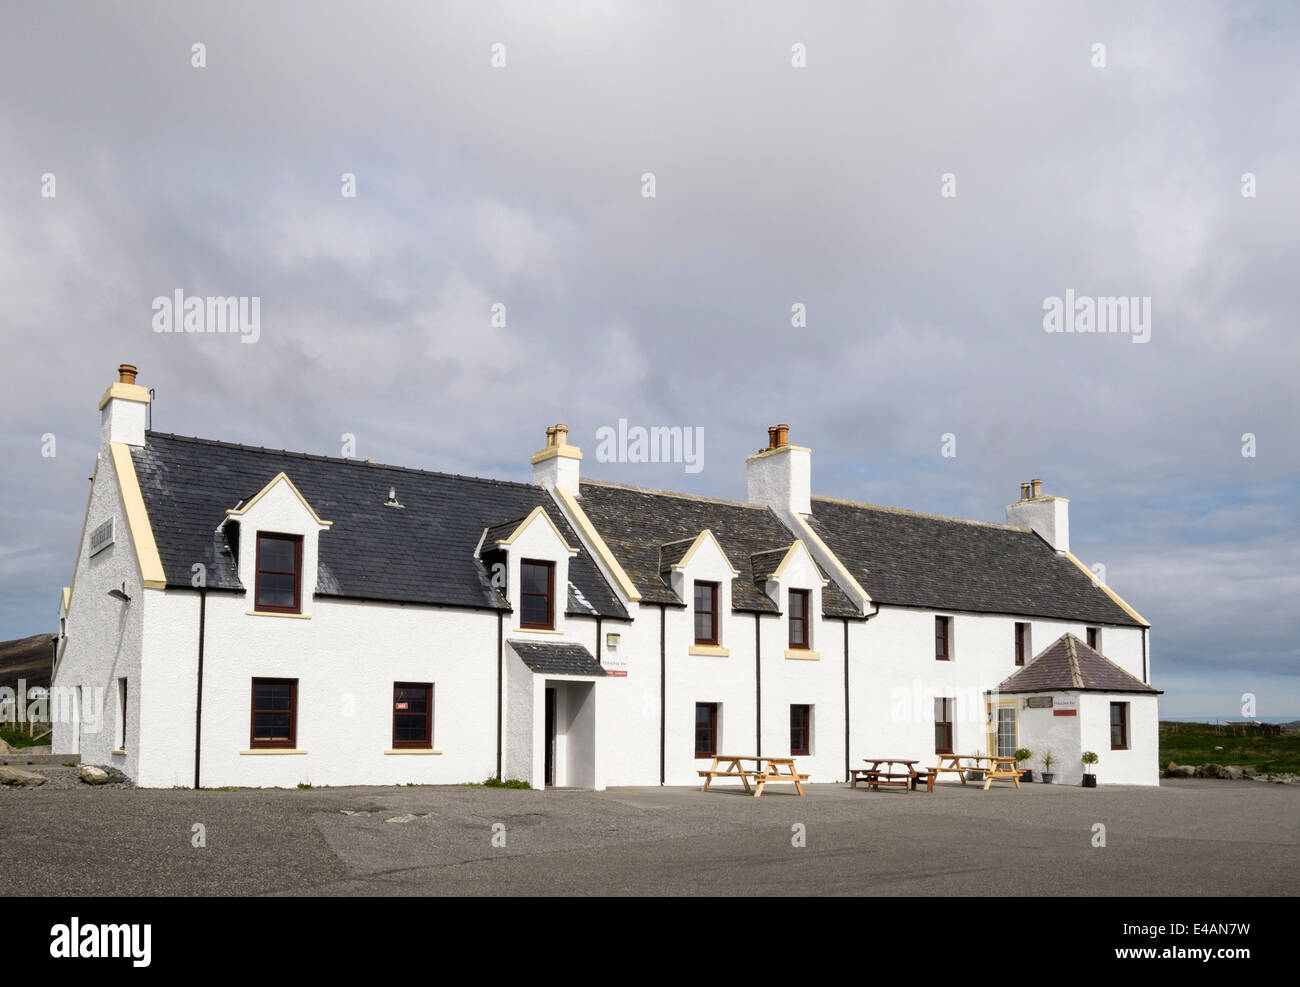 Polochar Inn pub et hôtel avant. Pol un Chara, South Uist, Outer Hebrides, Western Isles, Écosse, Royaume-Uni, Angleterre Banque D'Images